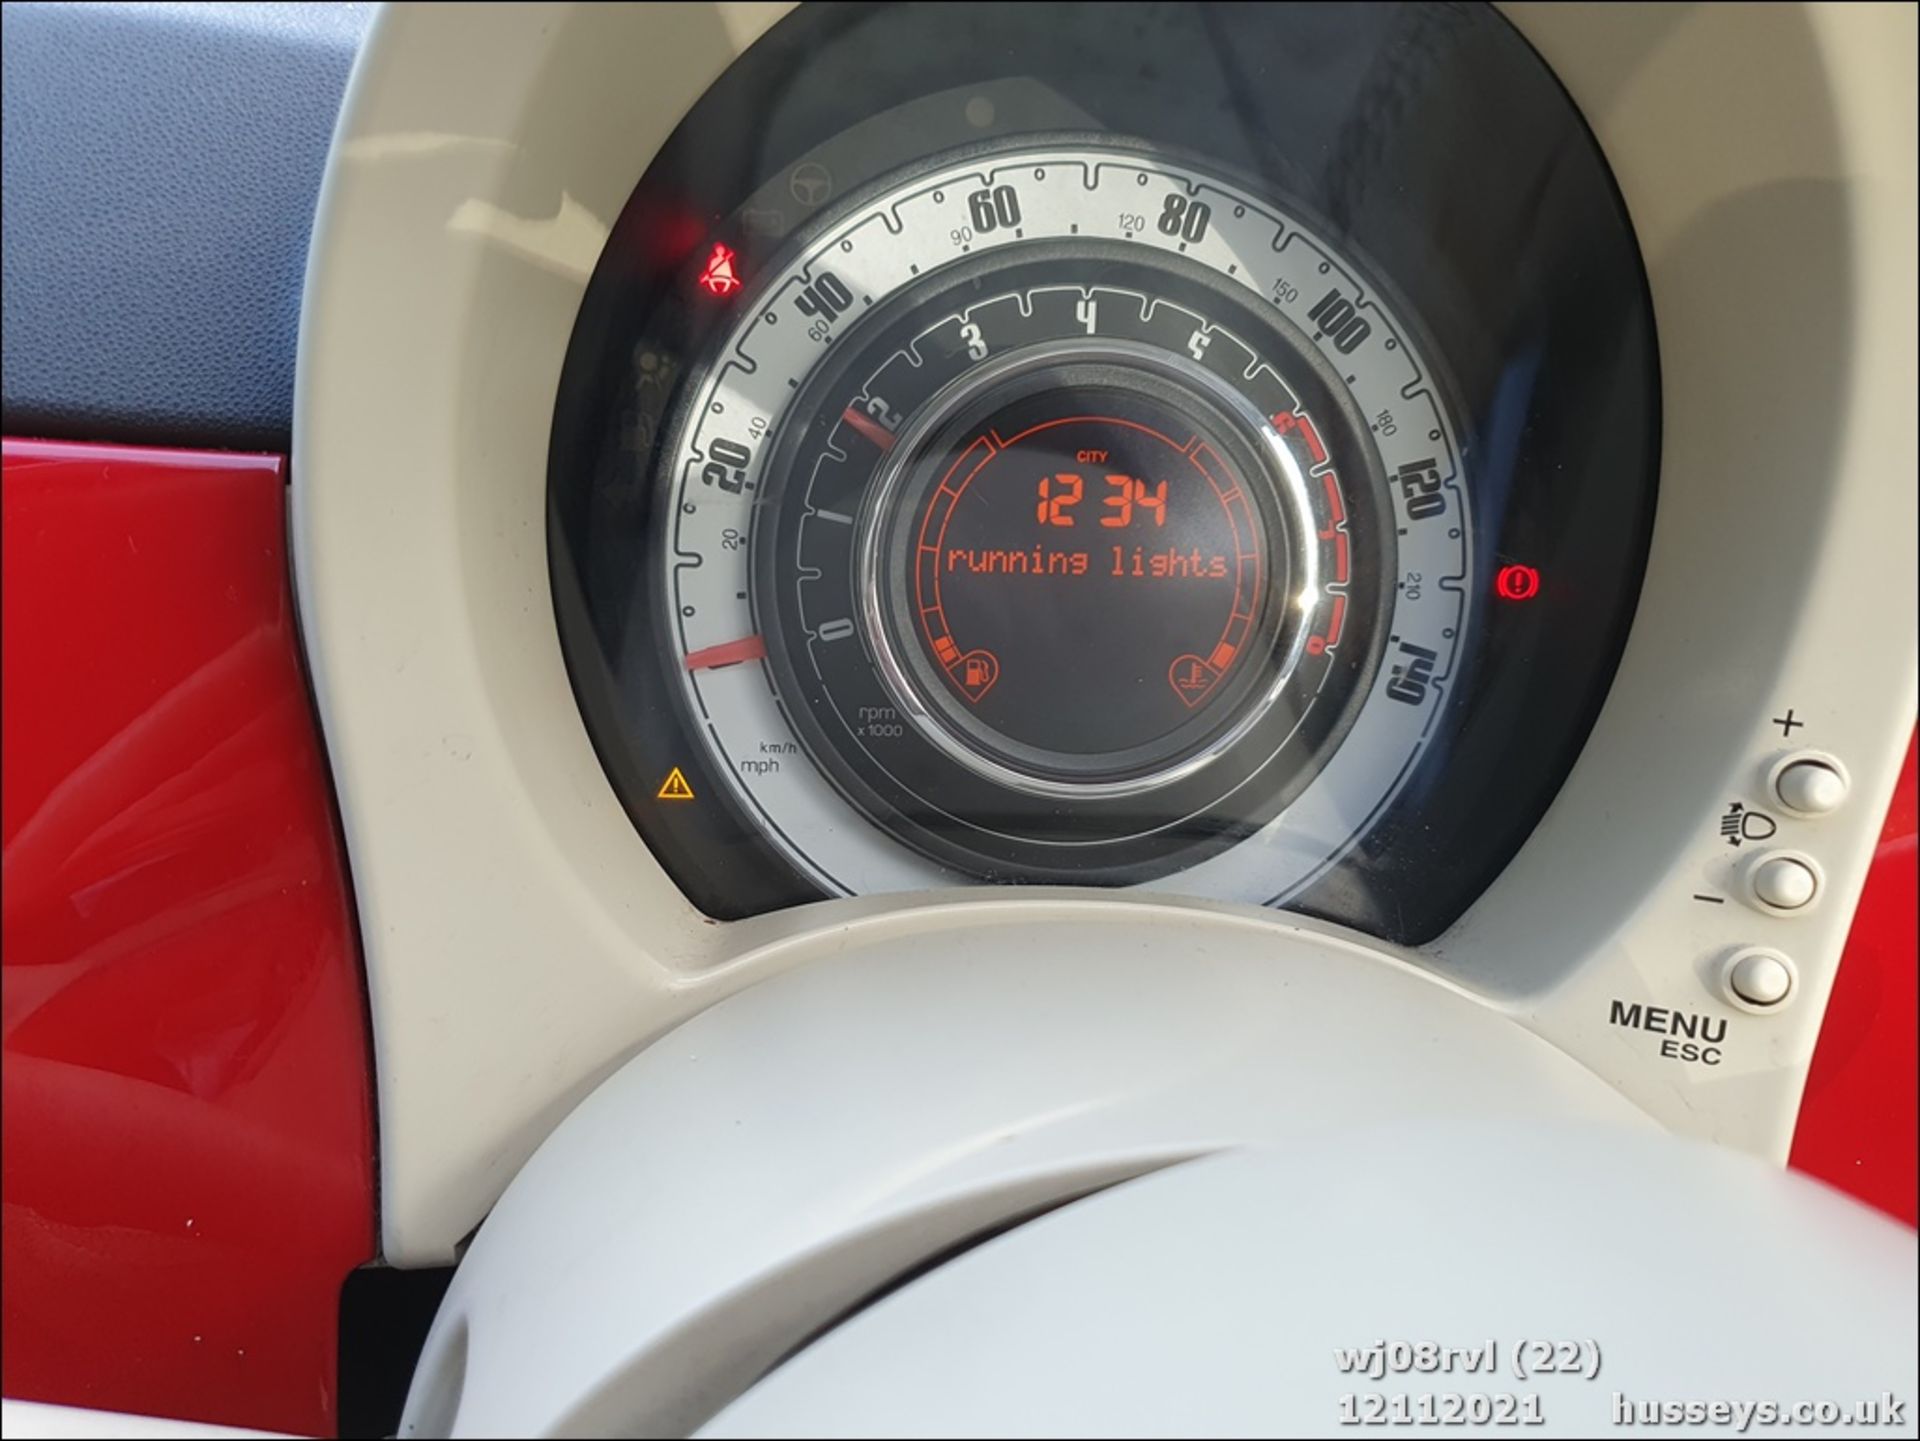 08/08 FIAT 500 POP RHD - 1242cc 3dr Hatchback (Red, 115k) - Image 22 of 25